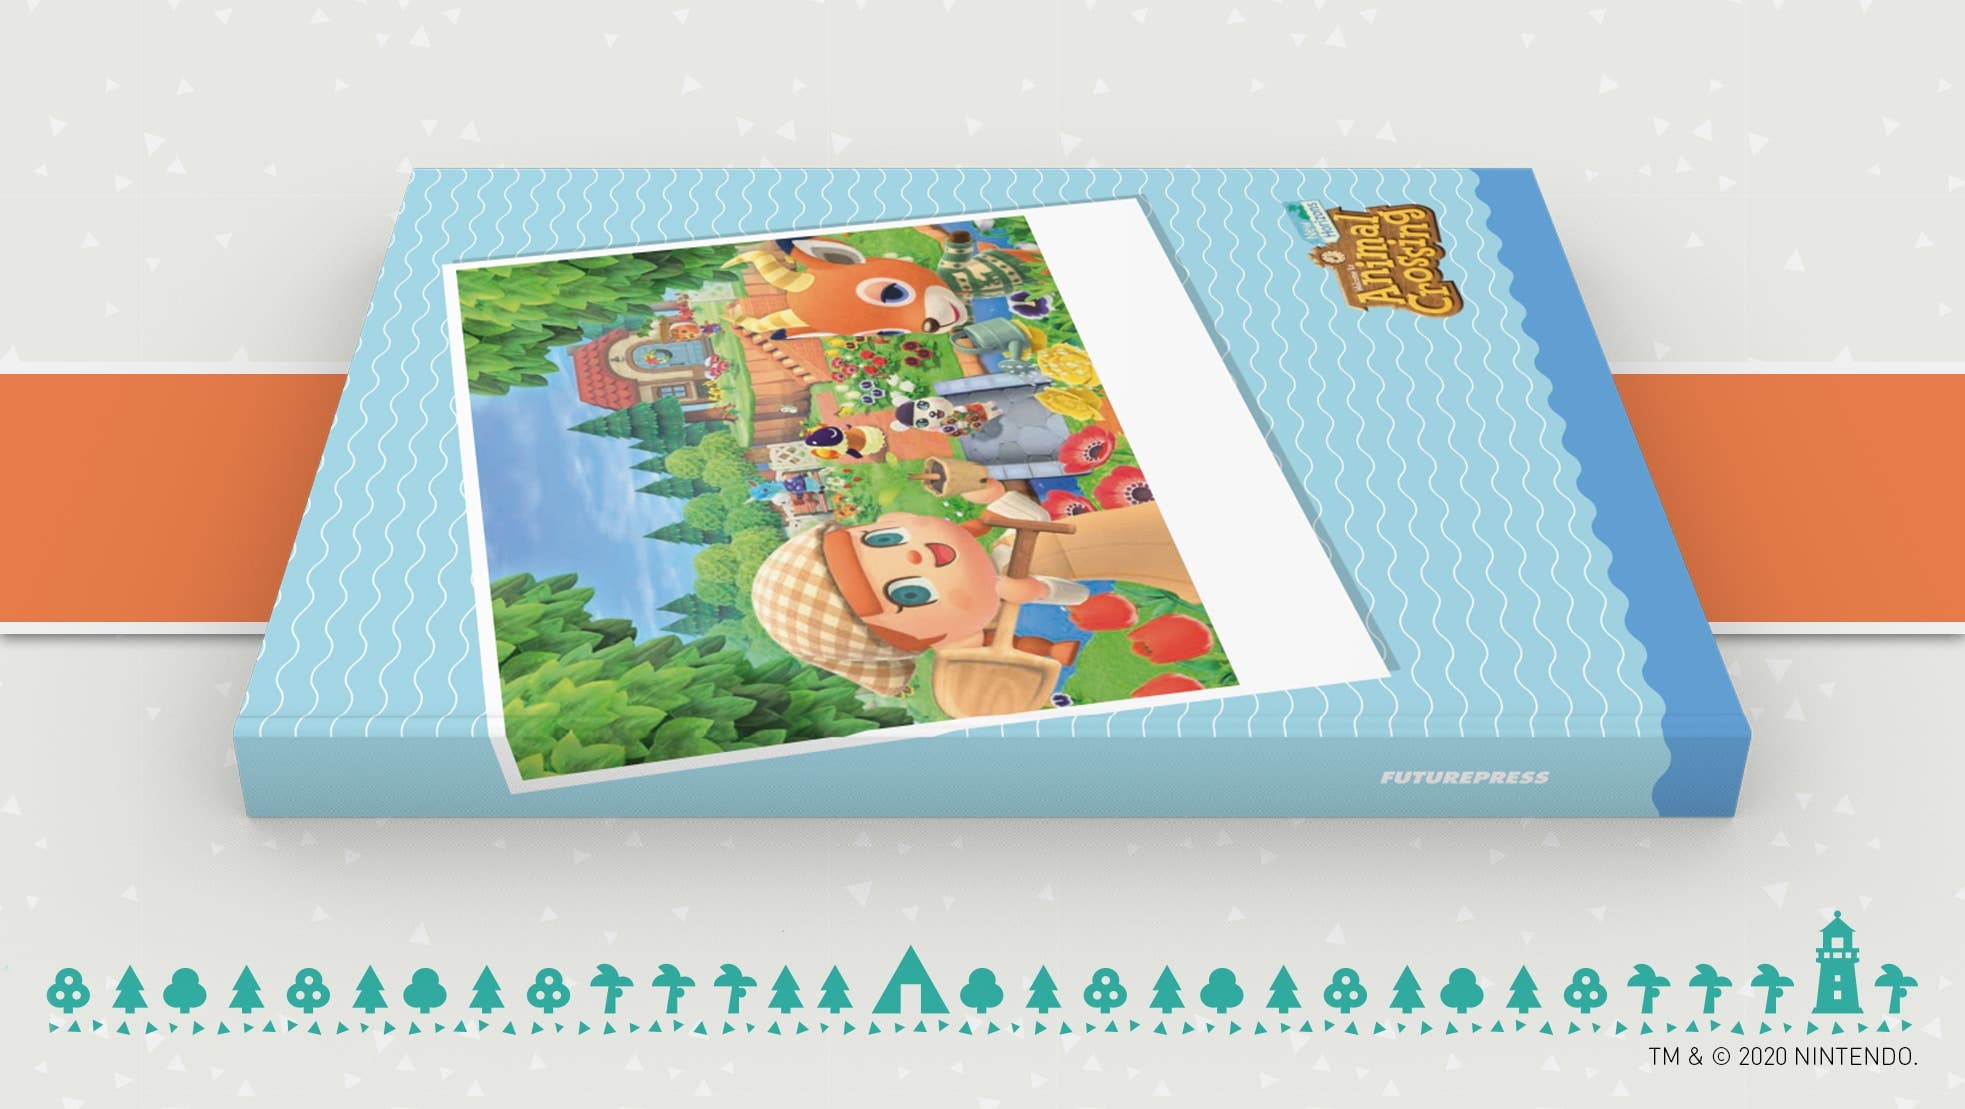 Nuevos detalles sobre el reemplazo de la guía oficial de Animal Crossing: New Horizons por errores